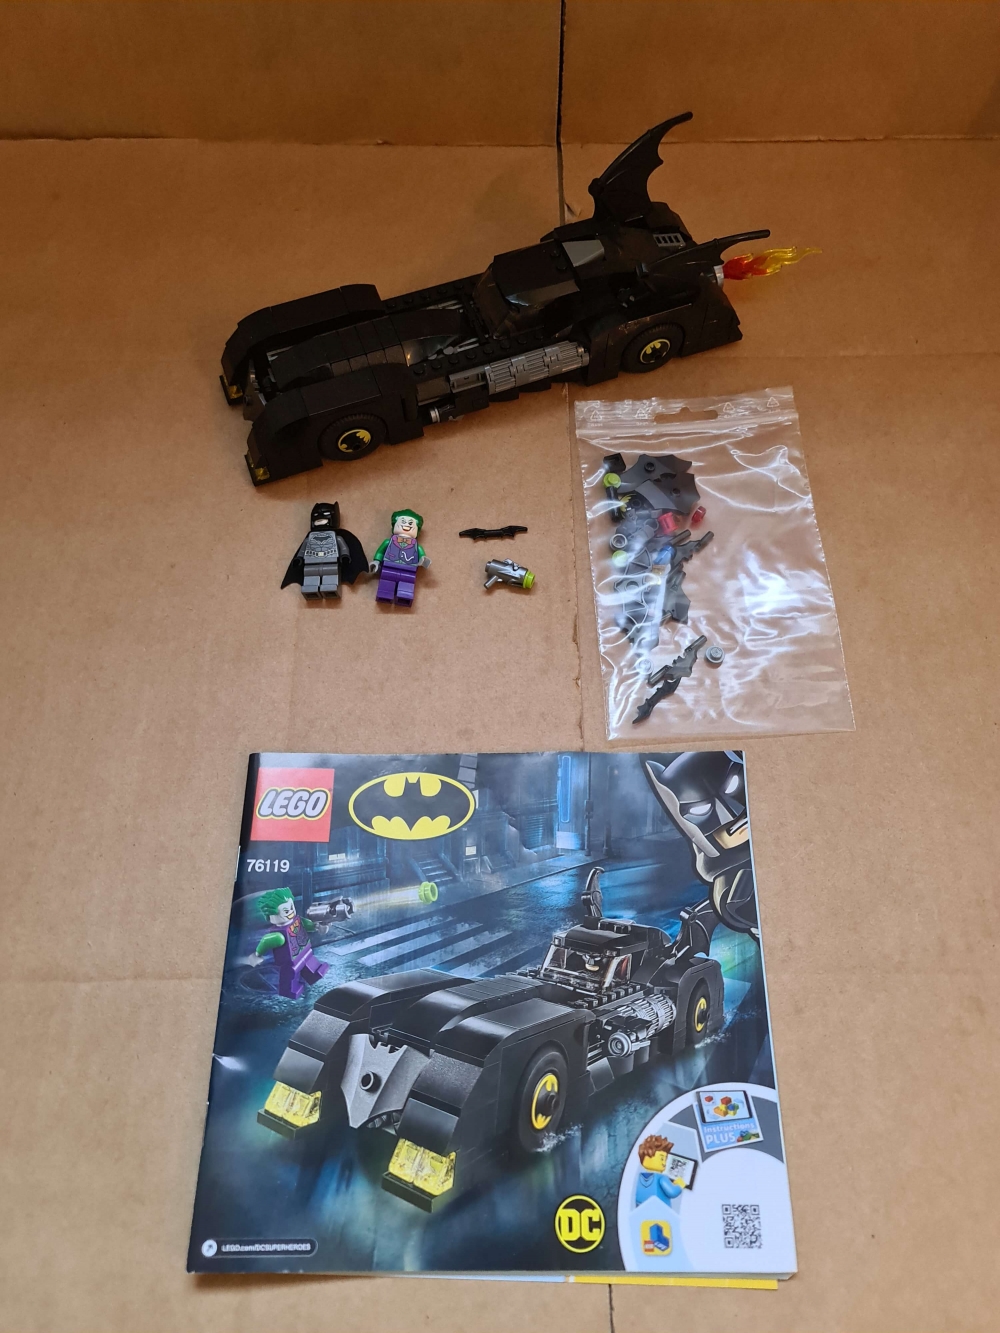 Sett 76119 fra Lego Super Heroes : Batman II serien.
Meget pent. Som nytt.
Komplett med manual og alle ekstradeler.